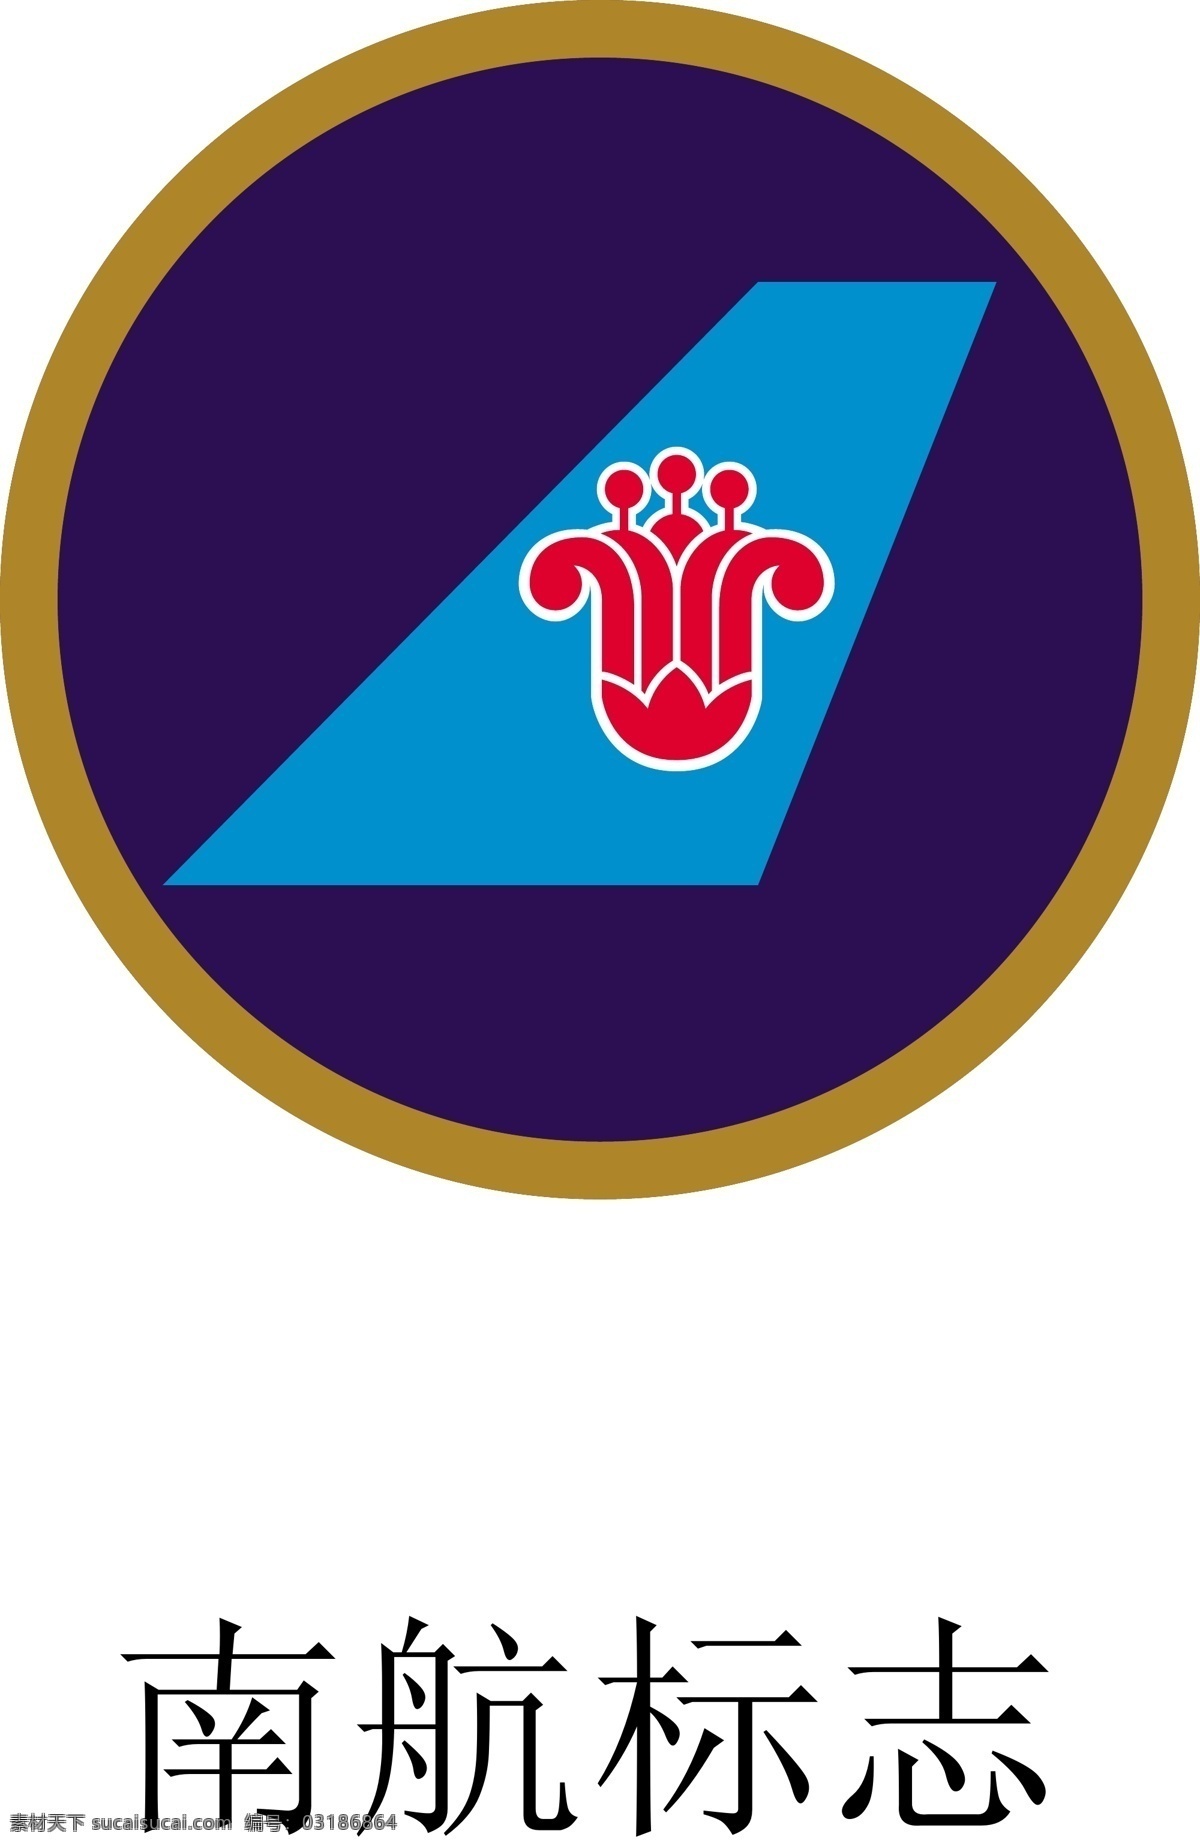 南航标志 标志 标识 机场标志 机场标识 机场 标志标识 vi设计 企业 logo 标识标志图标 矢量